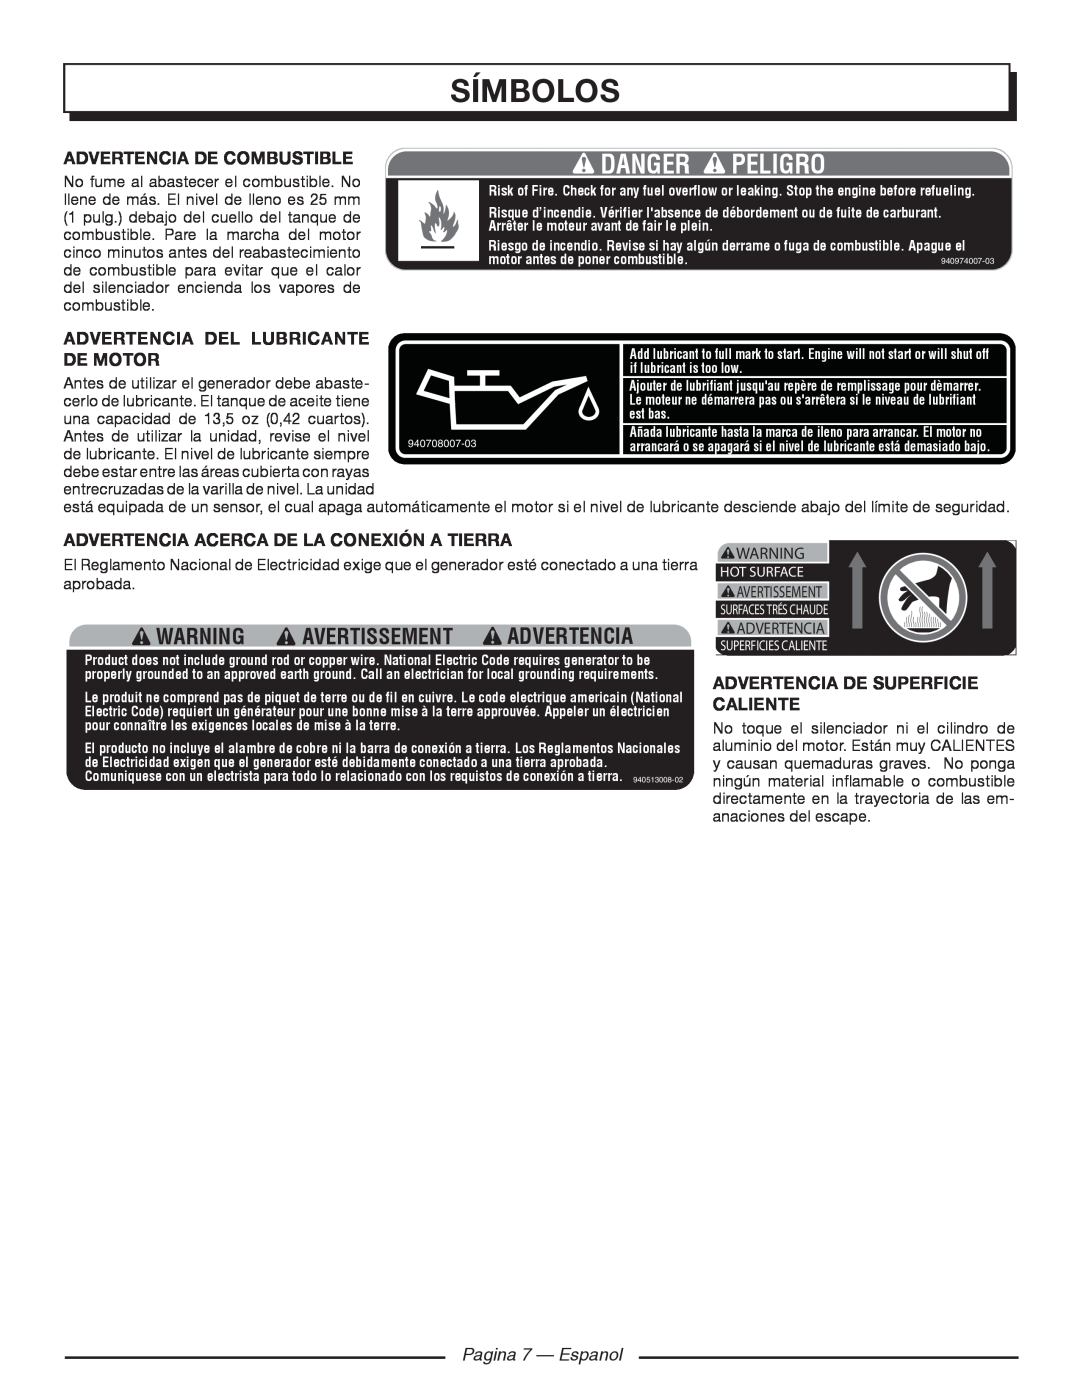 Homelite HGCA1400 Símbolos, Danger Peligro, Warning Avertissement Advertencia, Advertencia de combustible 